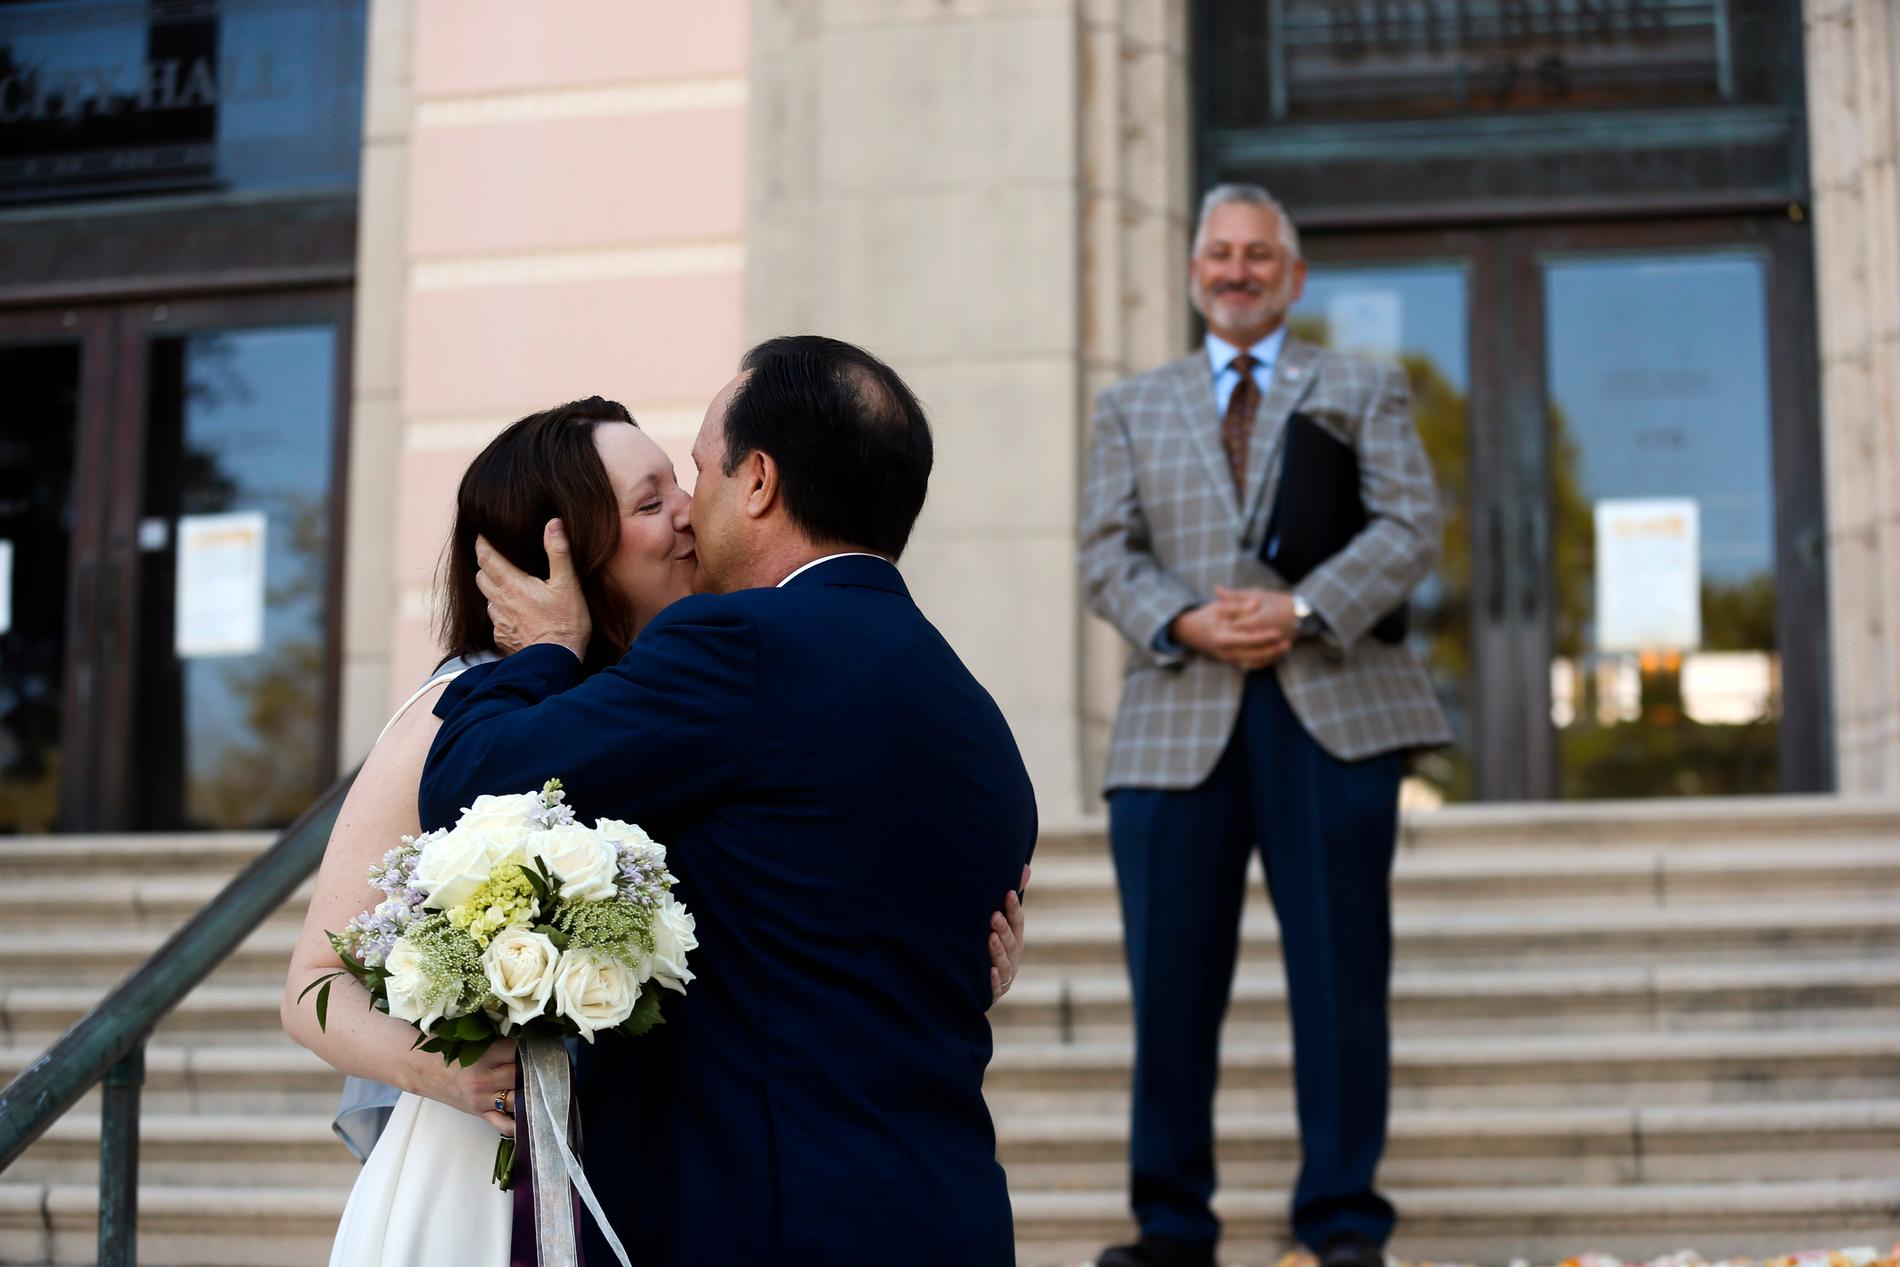 ST PETERSBURG, USA Gifta, trots allt. Kristen Shepherd och Todd Berman kysser varandra efter vigseln, som först ställts in på grund av coronaviruset, men som sen ändå kunde genomföras fast utomhus på stadshustrappan i St Petersburg, Florida. Fredag.